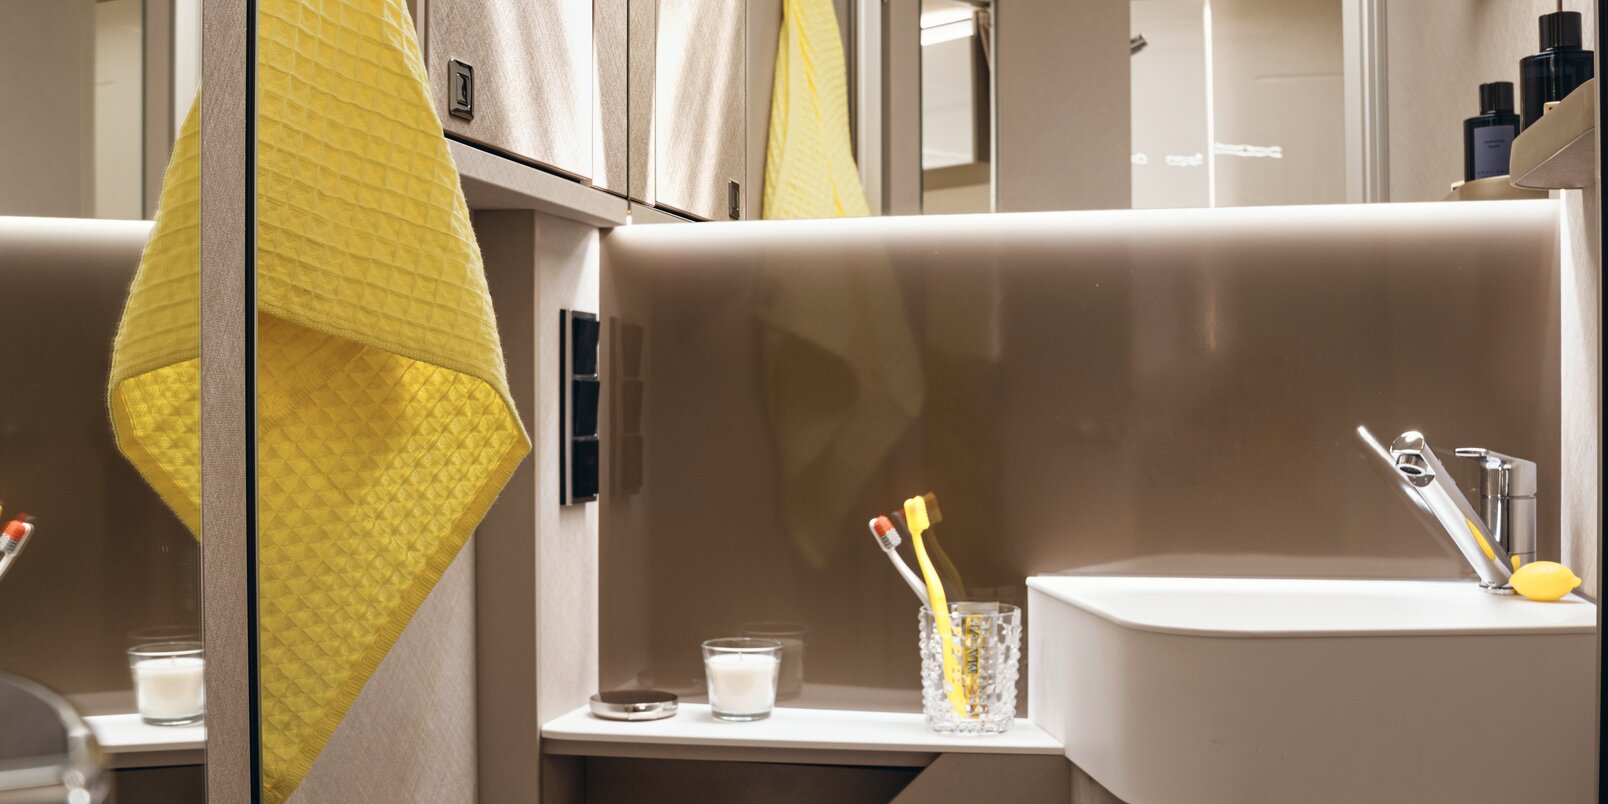 Spiegel, Waschbecken, Ablageflächen, gelbes Handtuch und Toilette im Bad des HYMER-Reisemobils Tramp S